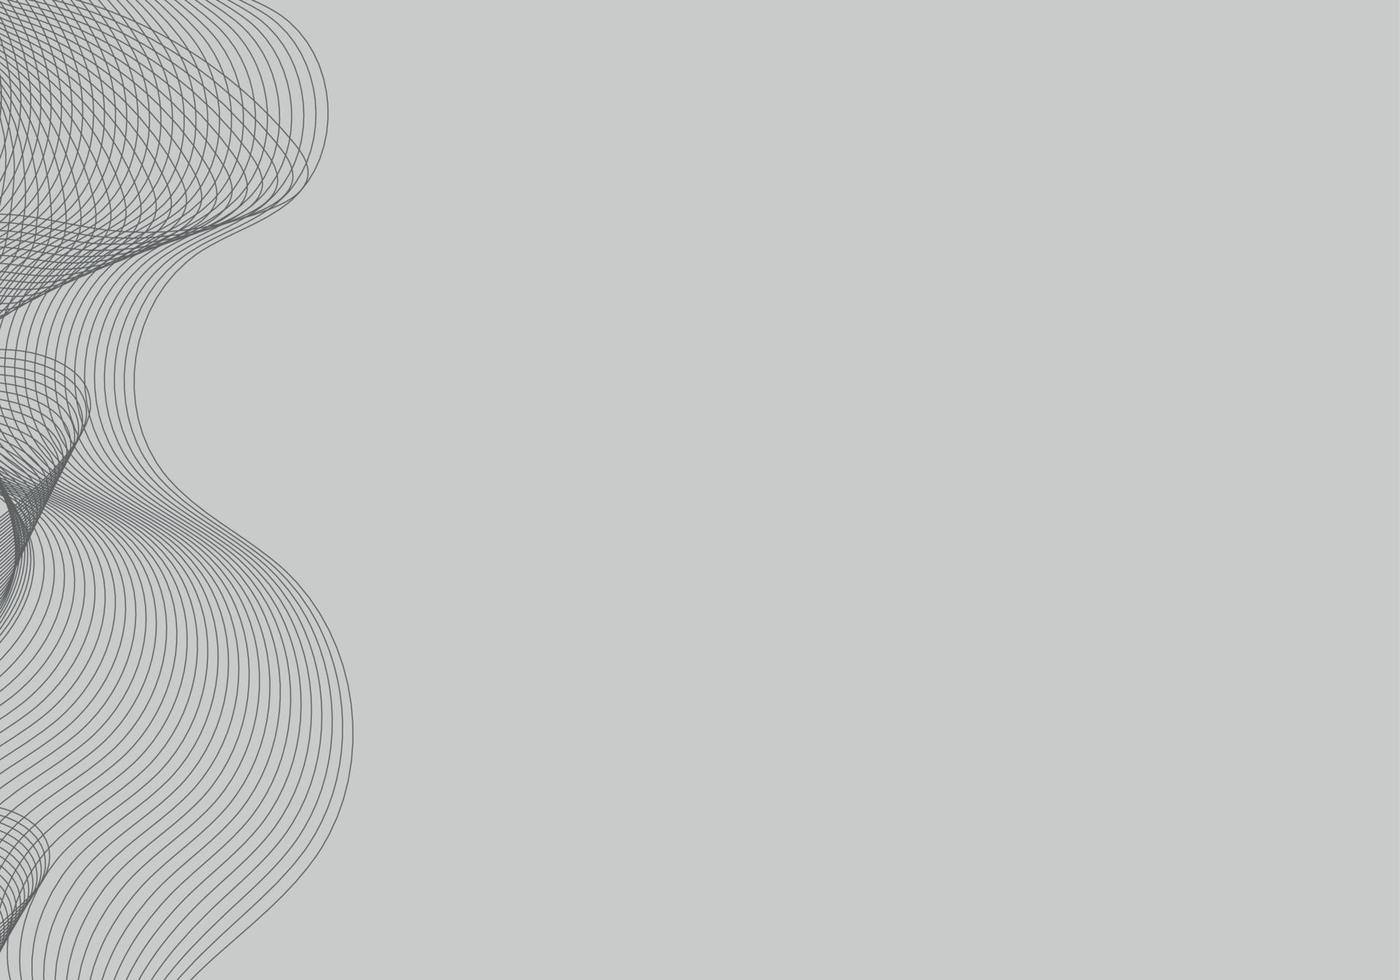 Fondo negro de semitono del círculo del vector abstracto. diseño de patrón de línea retro degradado. gráfico monocromático.